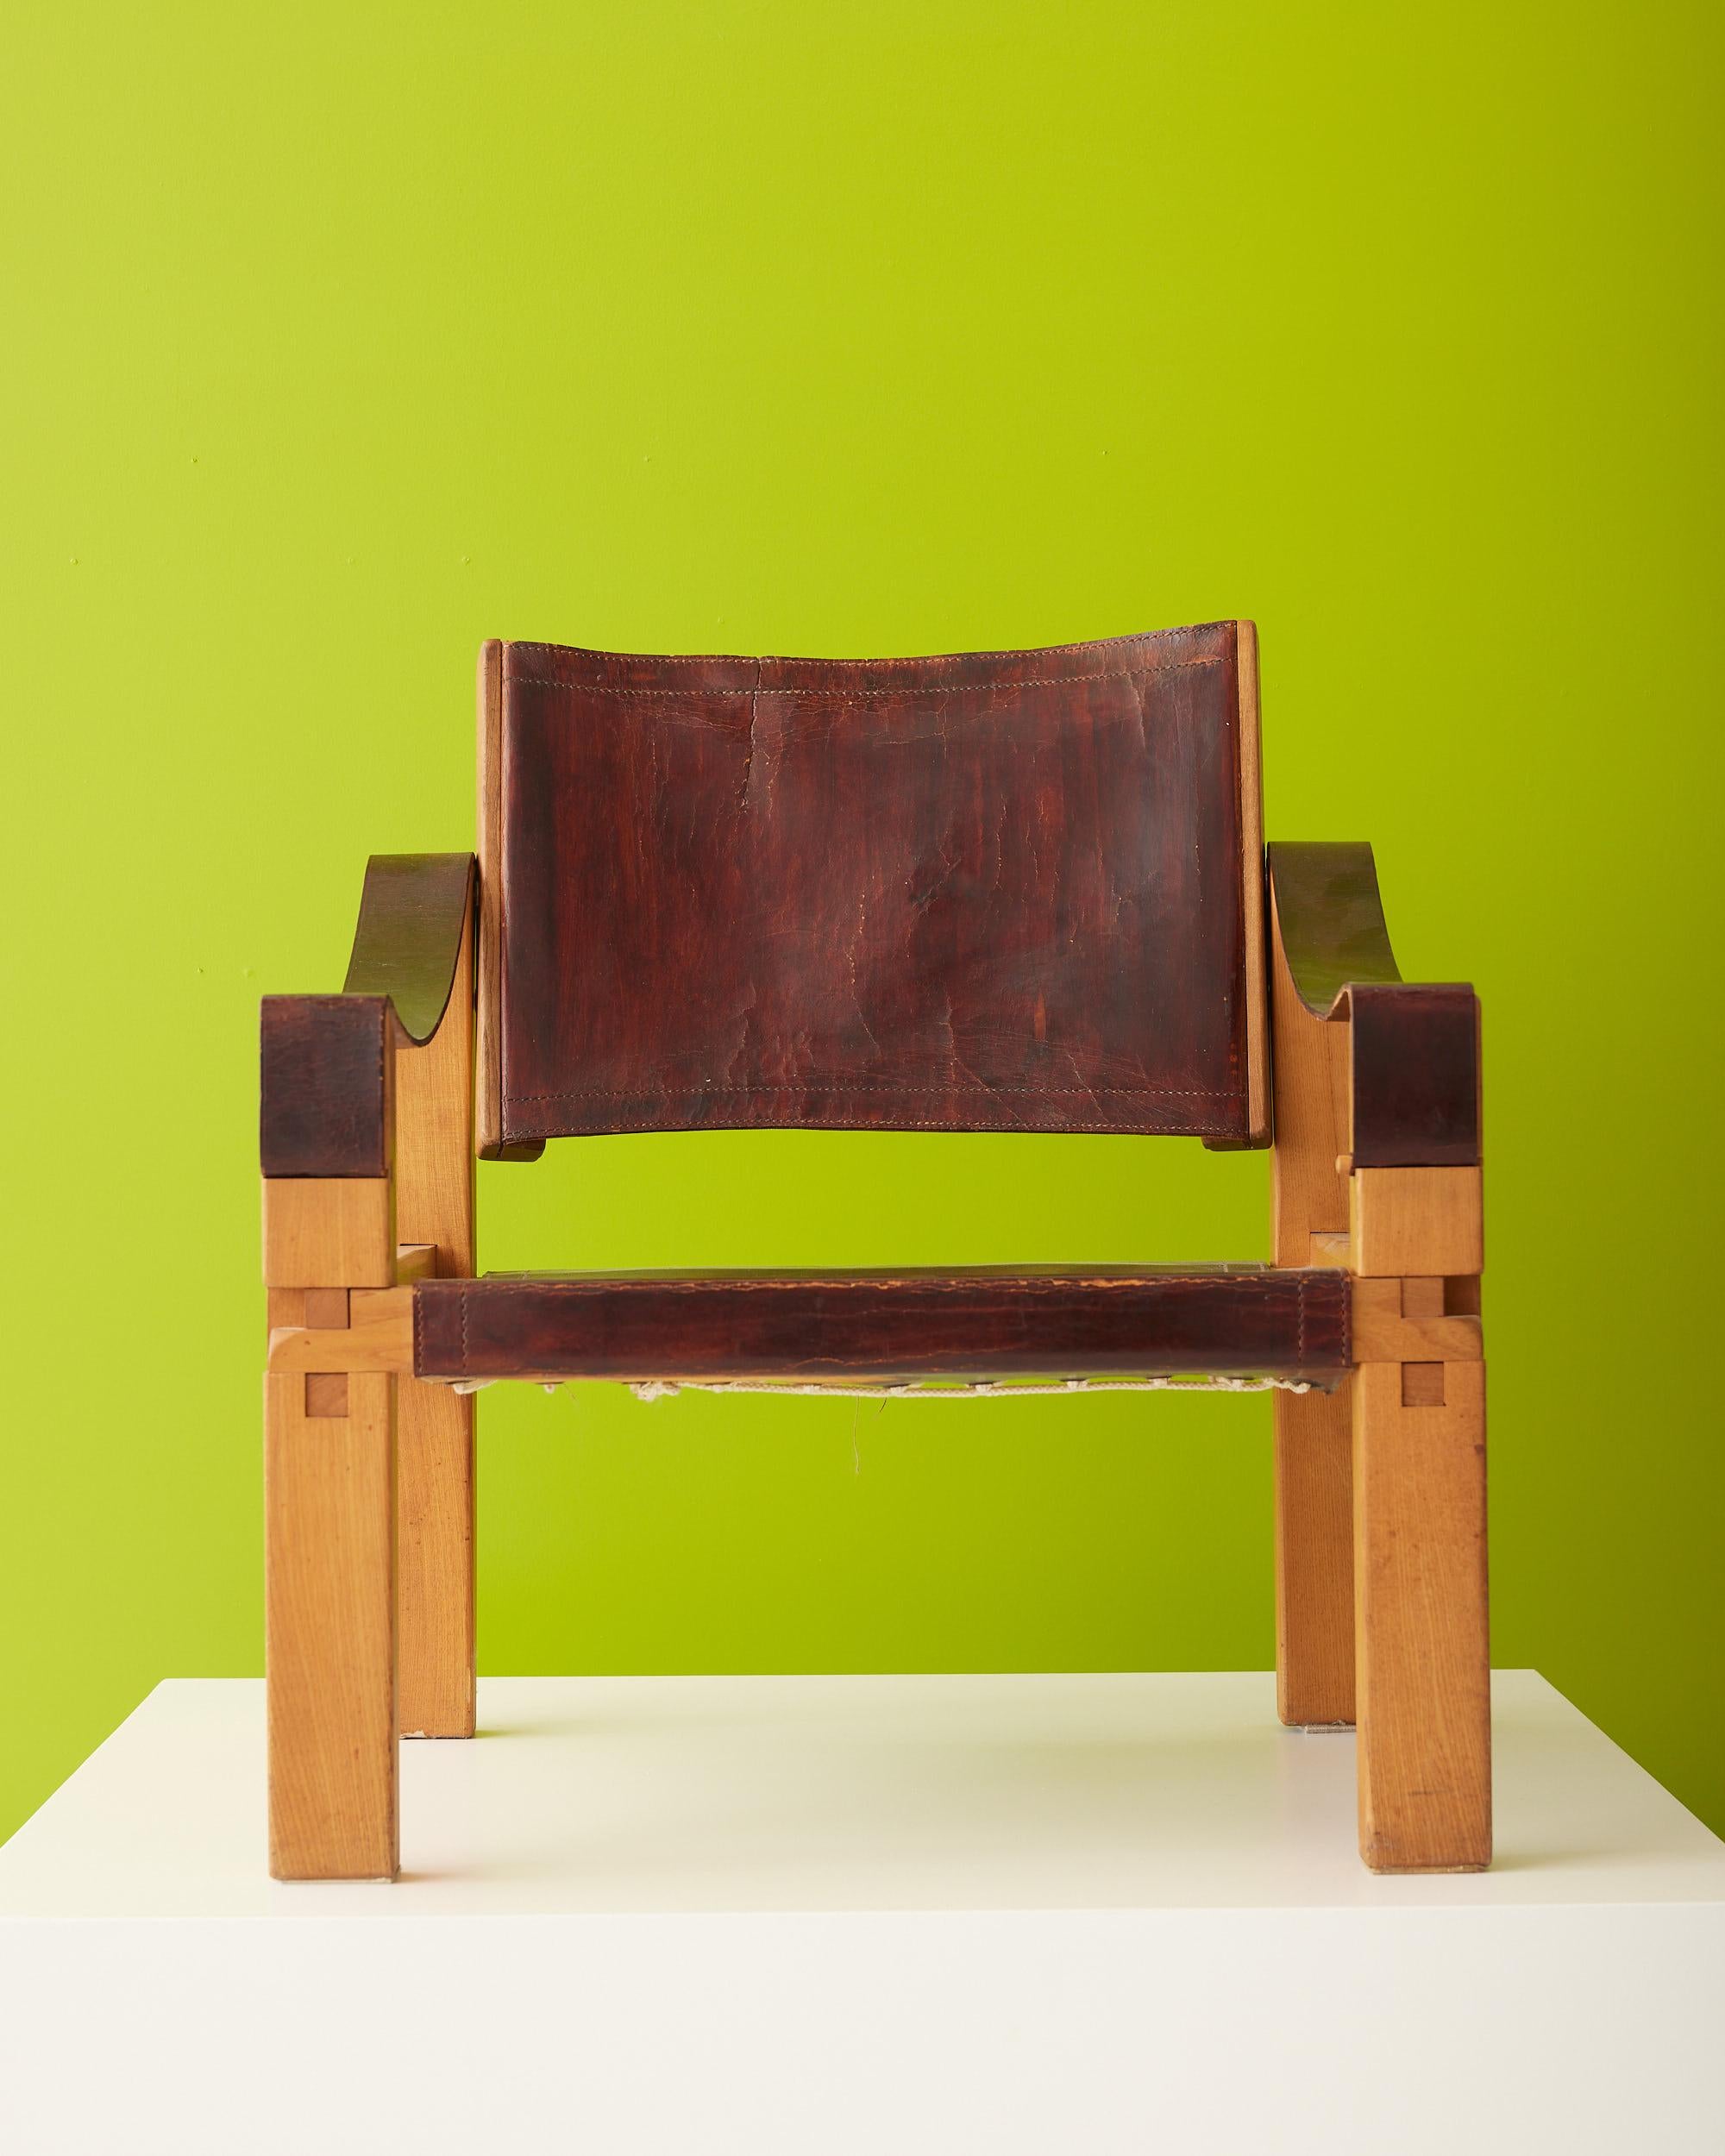 Pierre Chapo war ein bekannter französischer Möbeldesigner und Kunsthandwerker. Ursprünglich wollte er Berufsmaler werden, doch nach der Begegnung mit einem Schiffsbauer, der ihn in das Holzhandwerk einführte, änderte Chapo seinen Schwerpunkt und